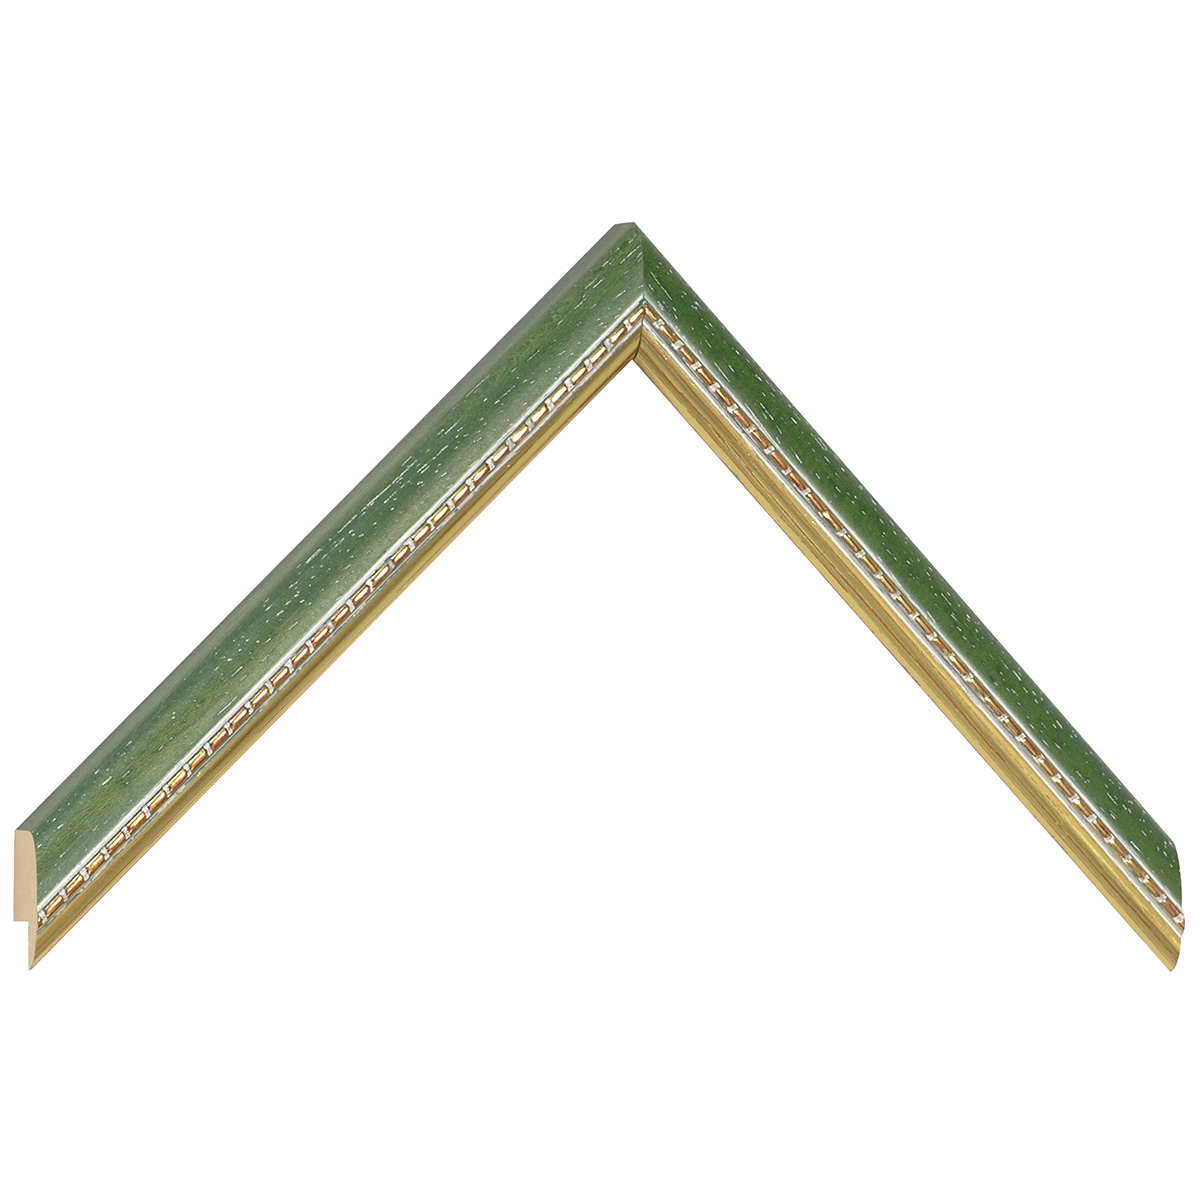 Profil ayous Lățime 17 mm - verde cu decorațiuni aurii în relief - Mostră